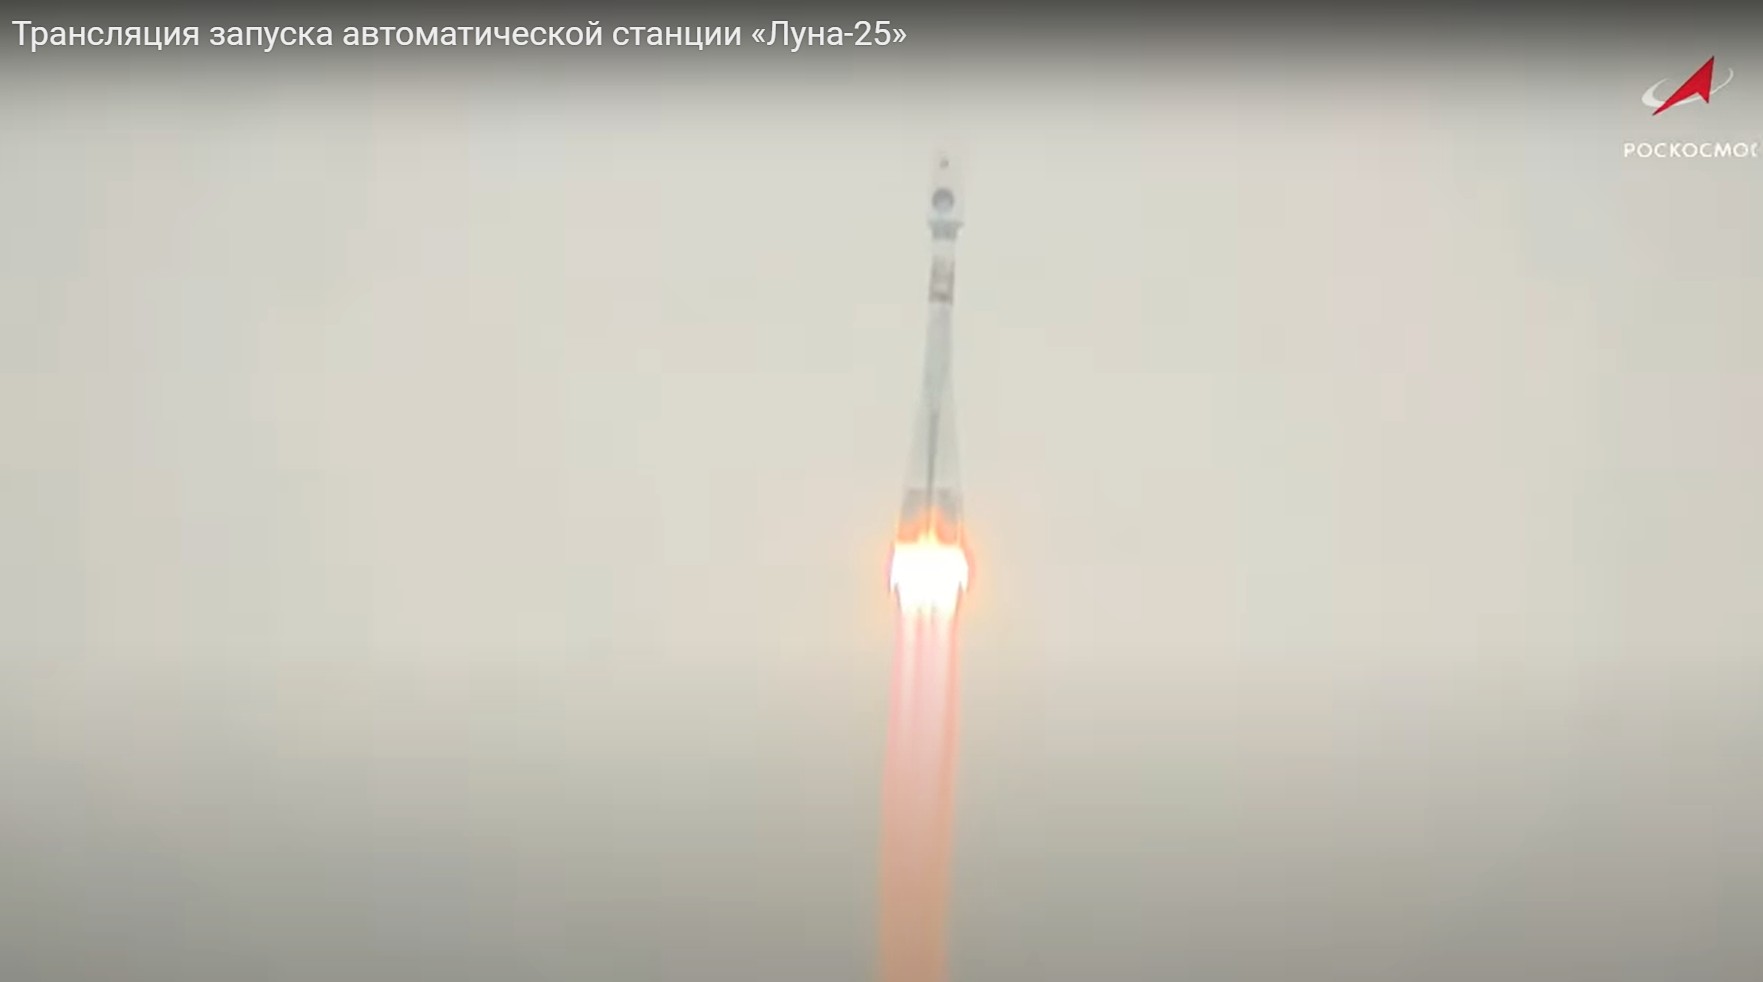 На запуске ракеты на Луну по приглашению Роскосмоса побывал костромич